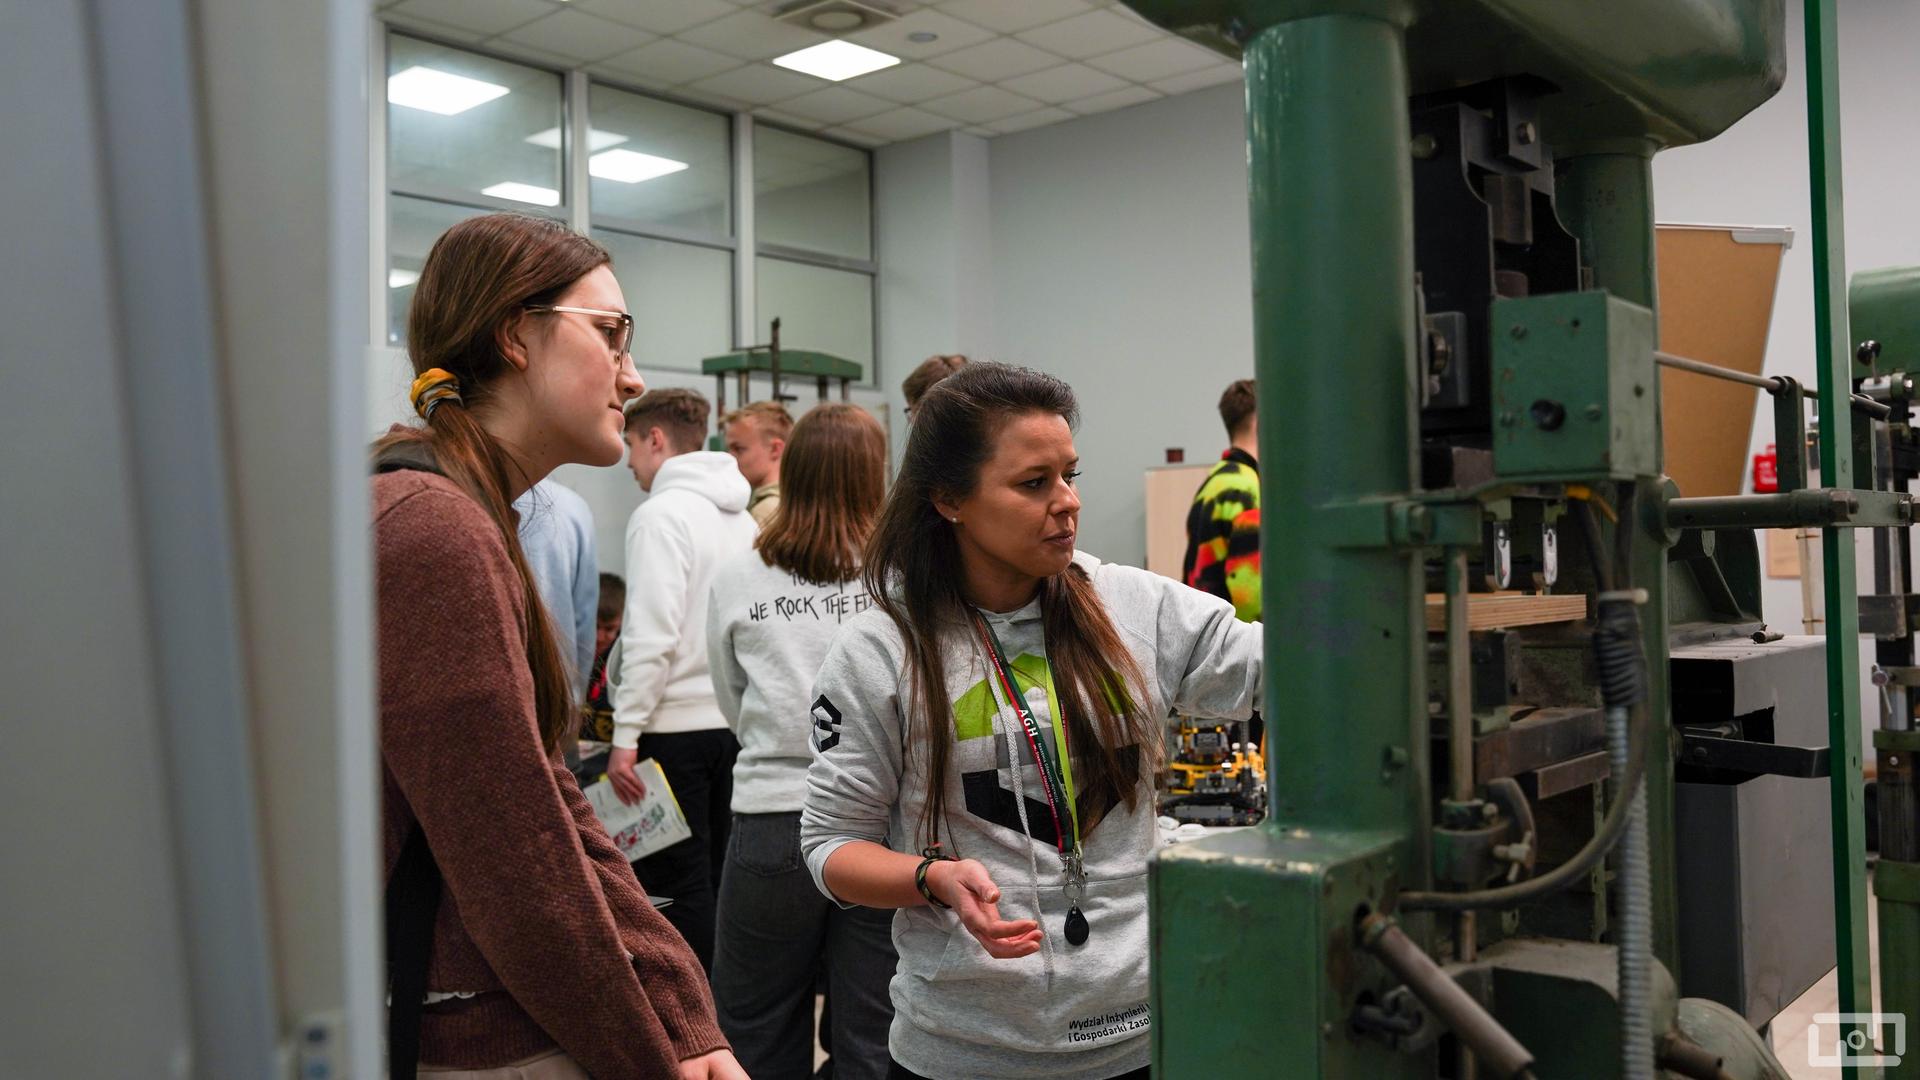 Na zdjęciu widać pracowniczkę Wydziału Inżynierii Lądowej i Gospodarki Zasobami ubraną w szara bluzę wydziałową. Kobieta wyjaśnia młodym ludziom działanie urządzenia. Po prawej stronie kobiety znajduje się maszyna wytrzymałościowa.